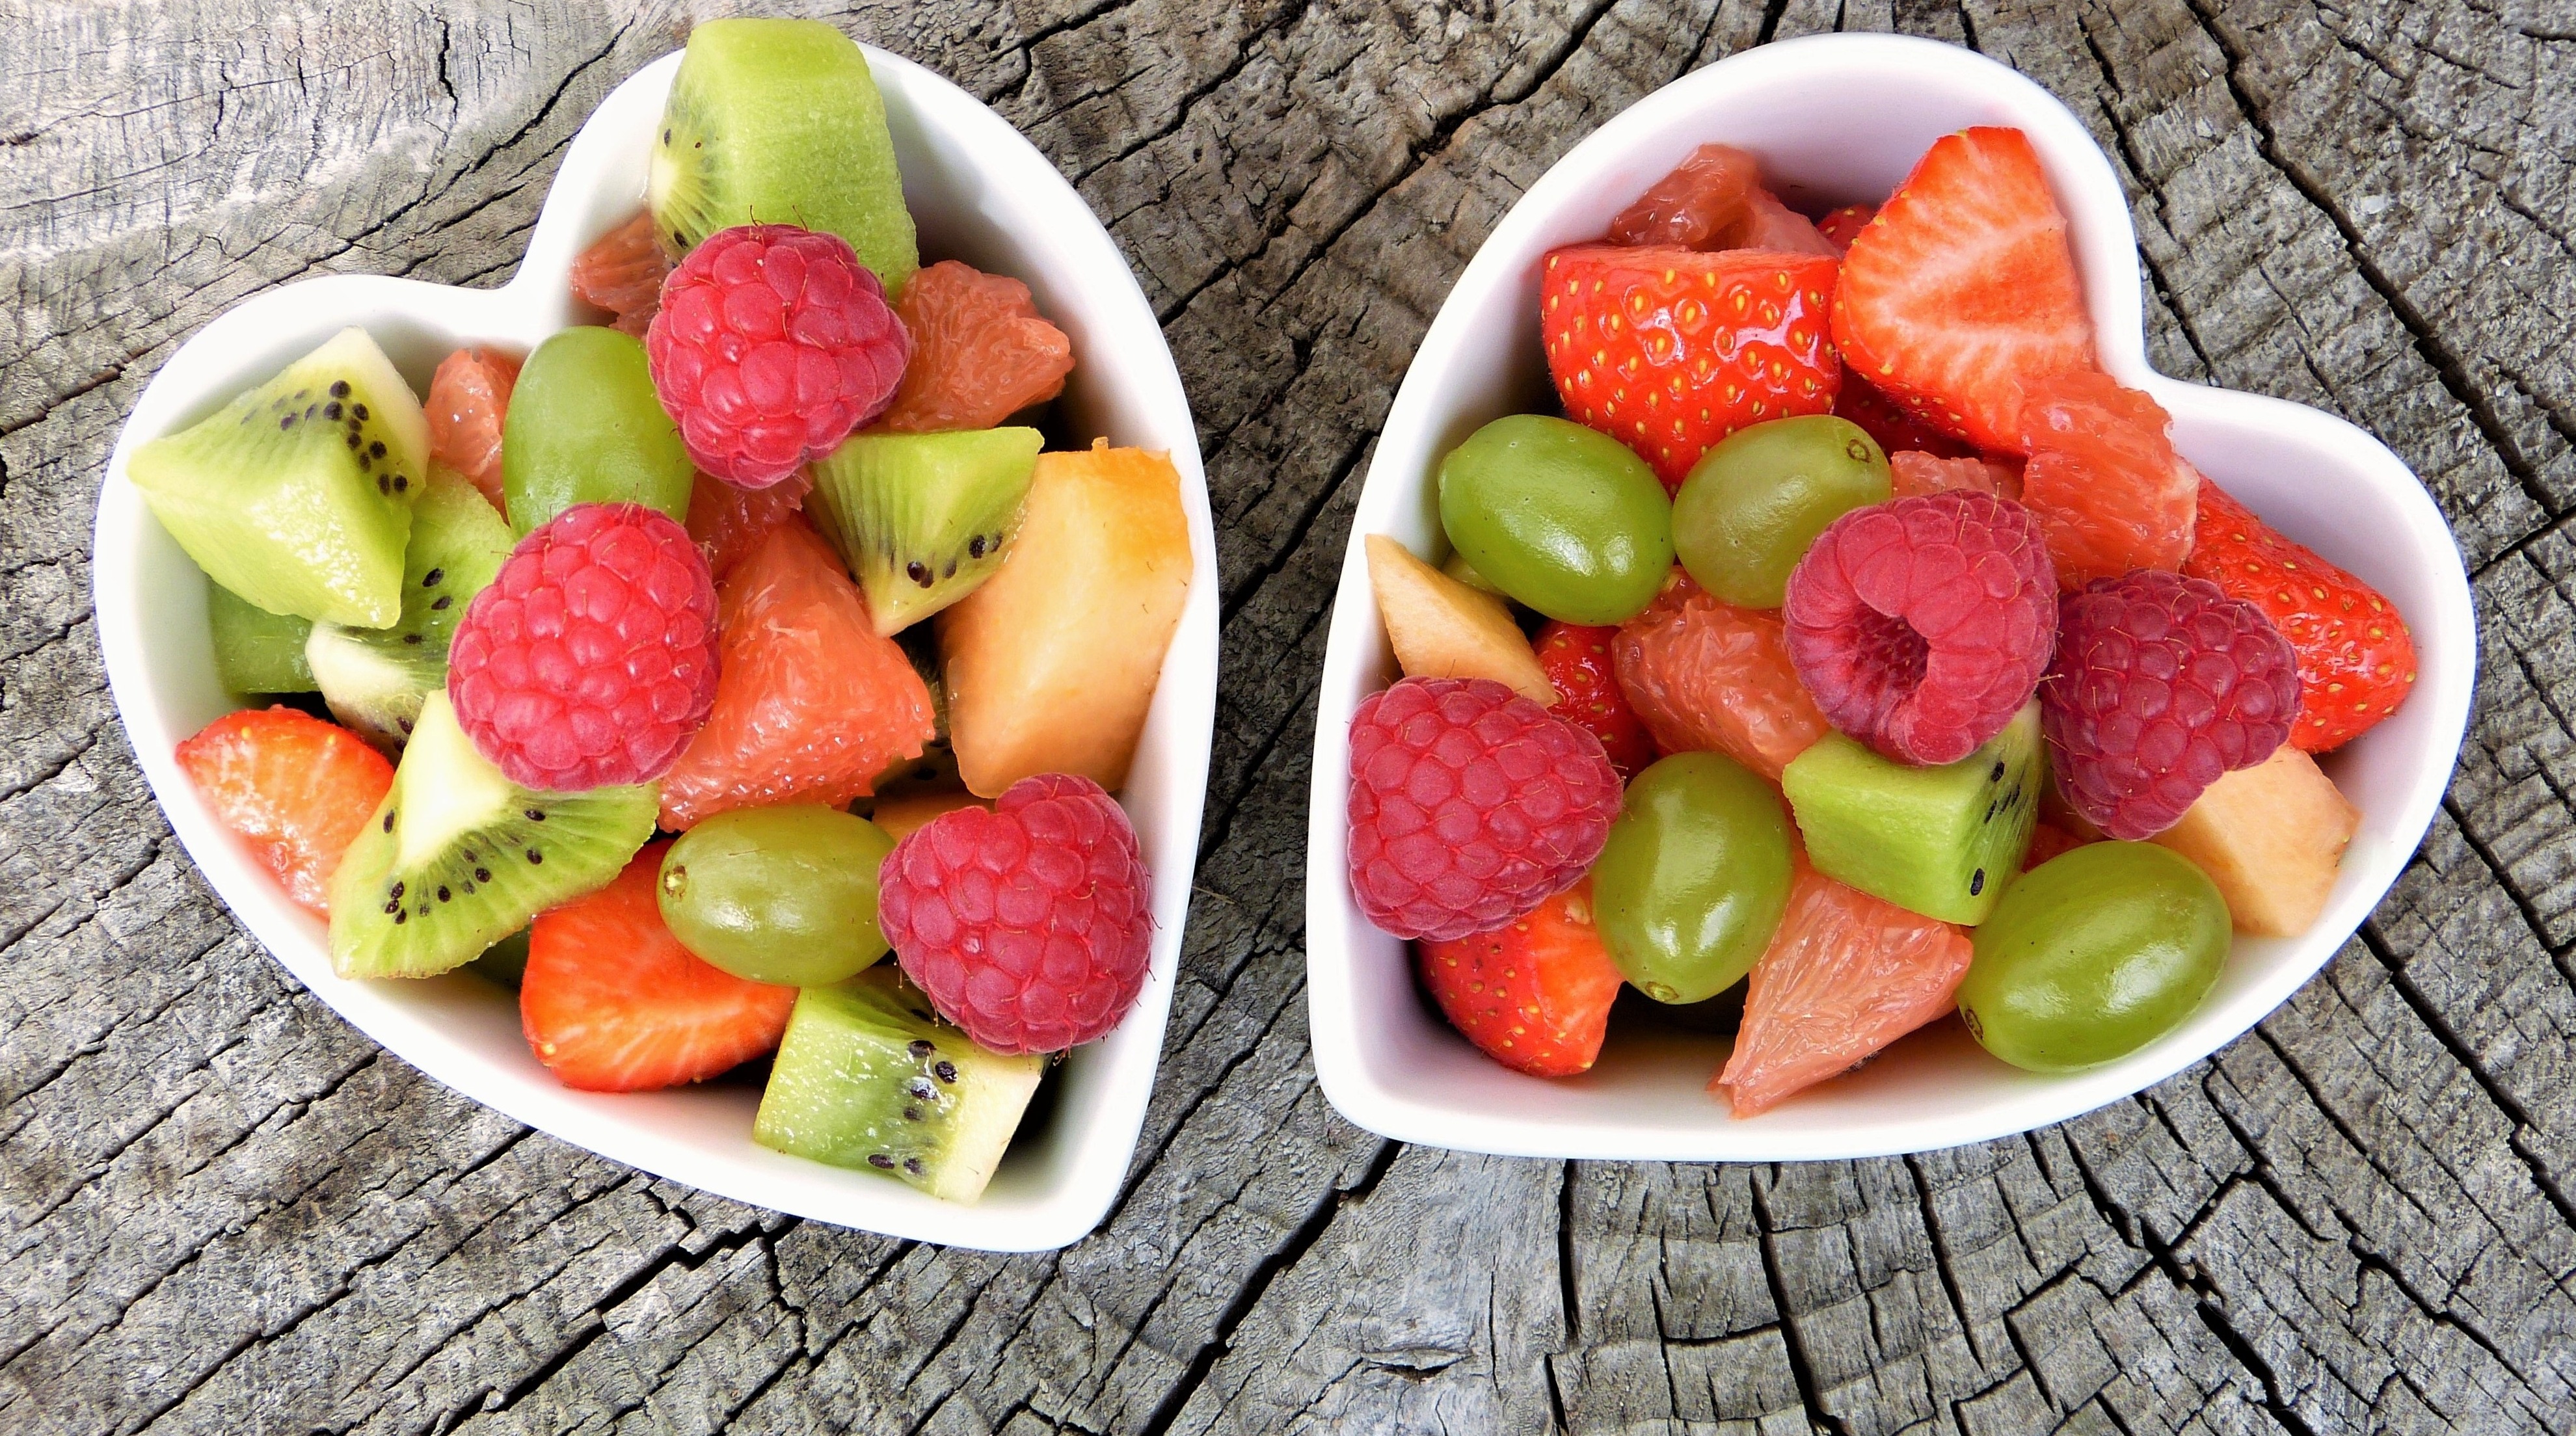 Bowls of fruit salad